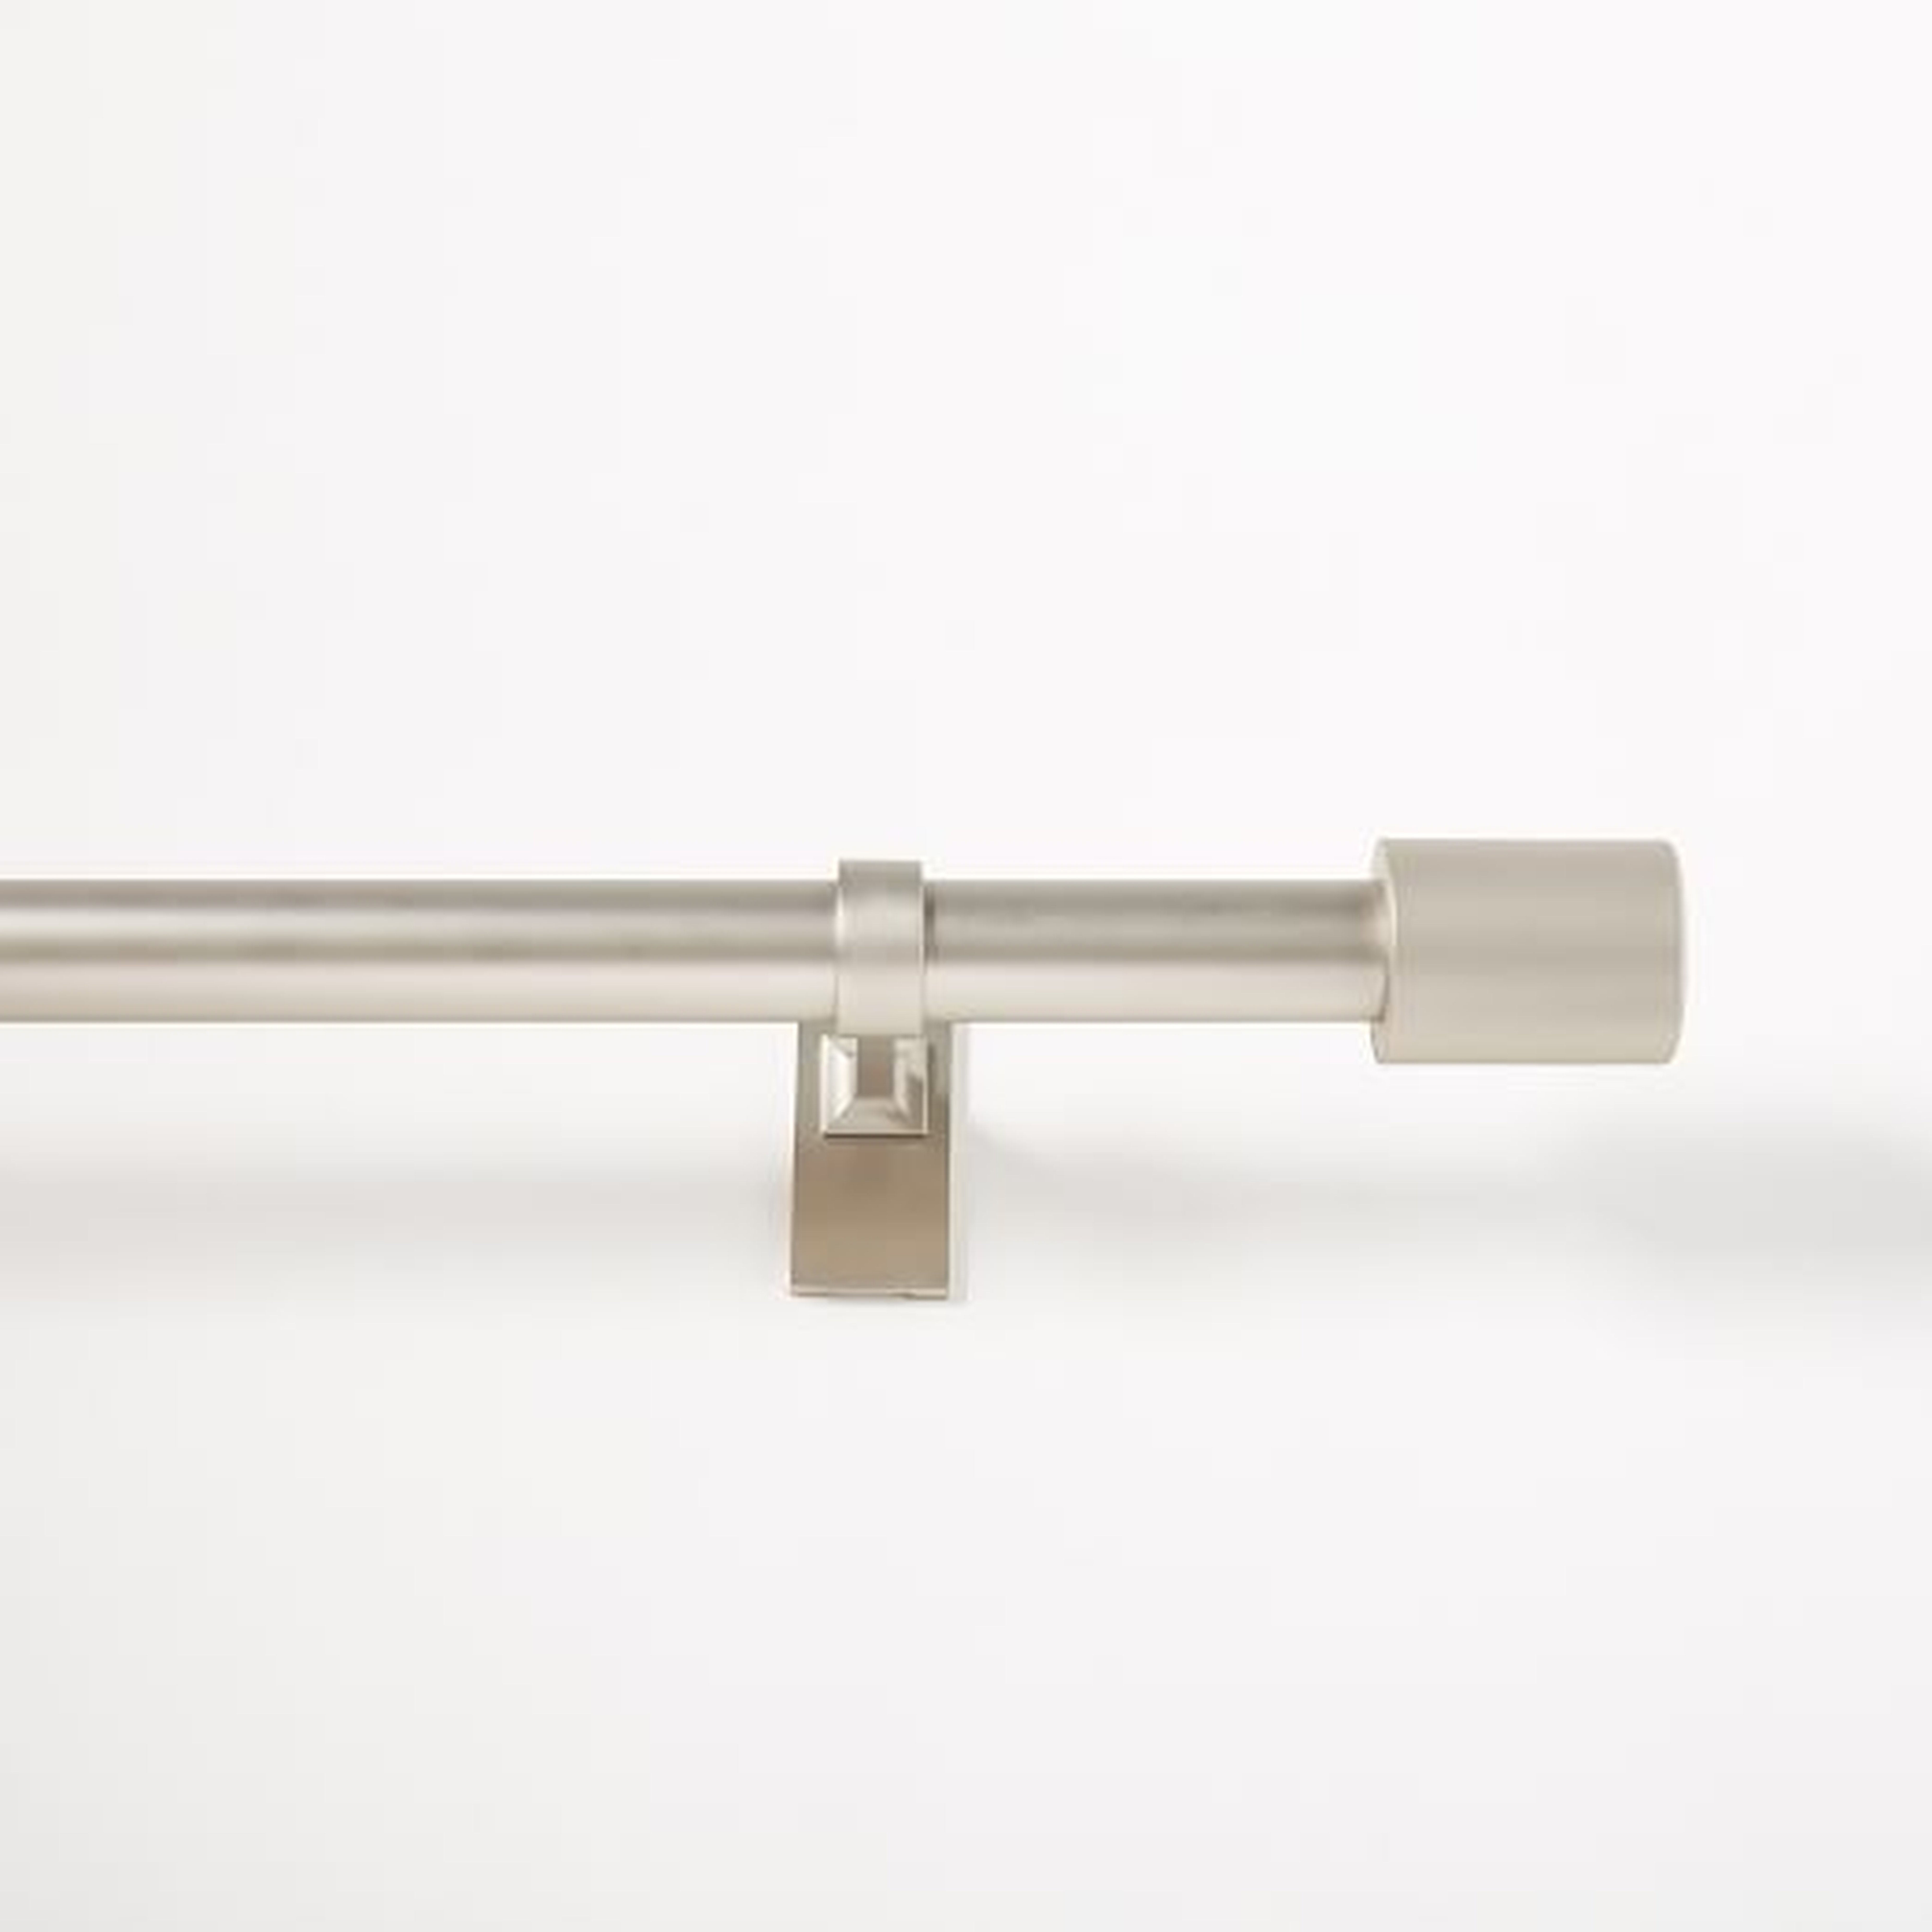 Oversized Adjustable Metal Rod - Brushed Nickel - West Elm